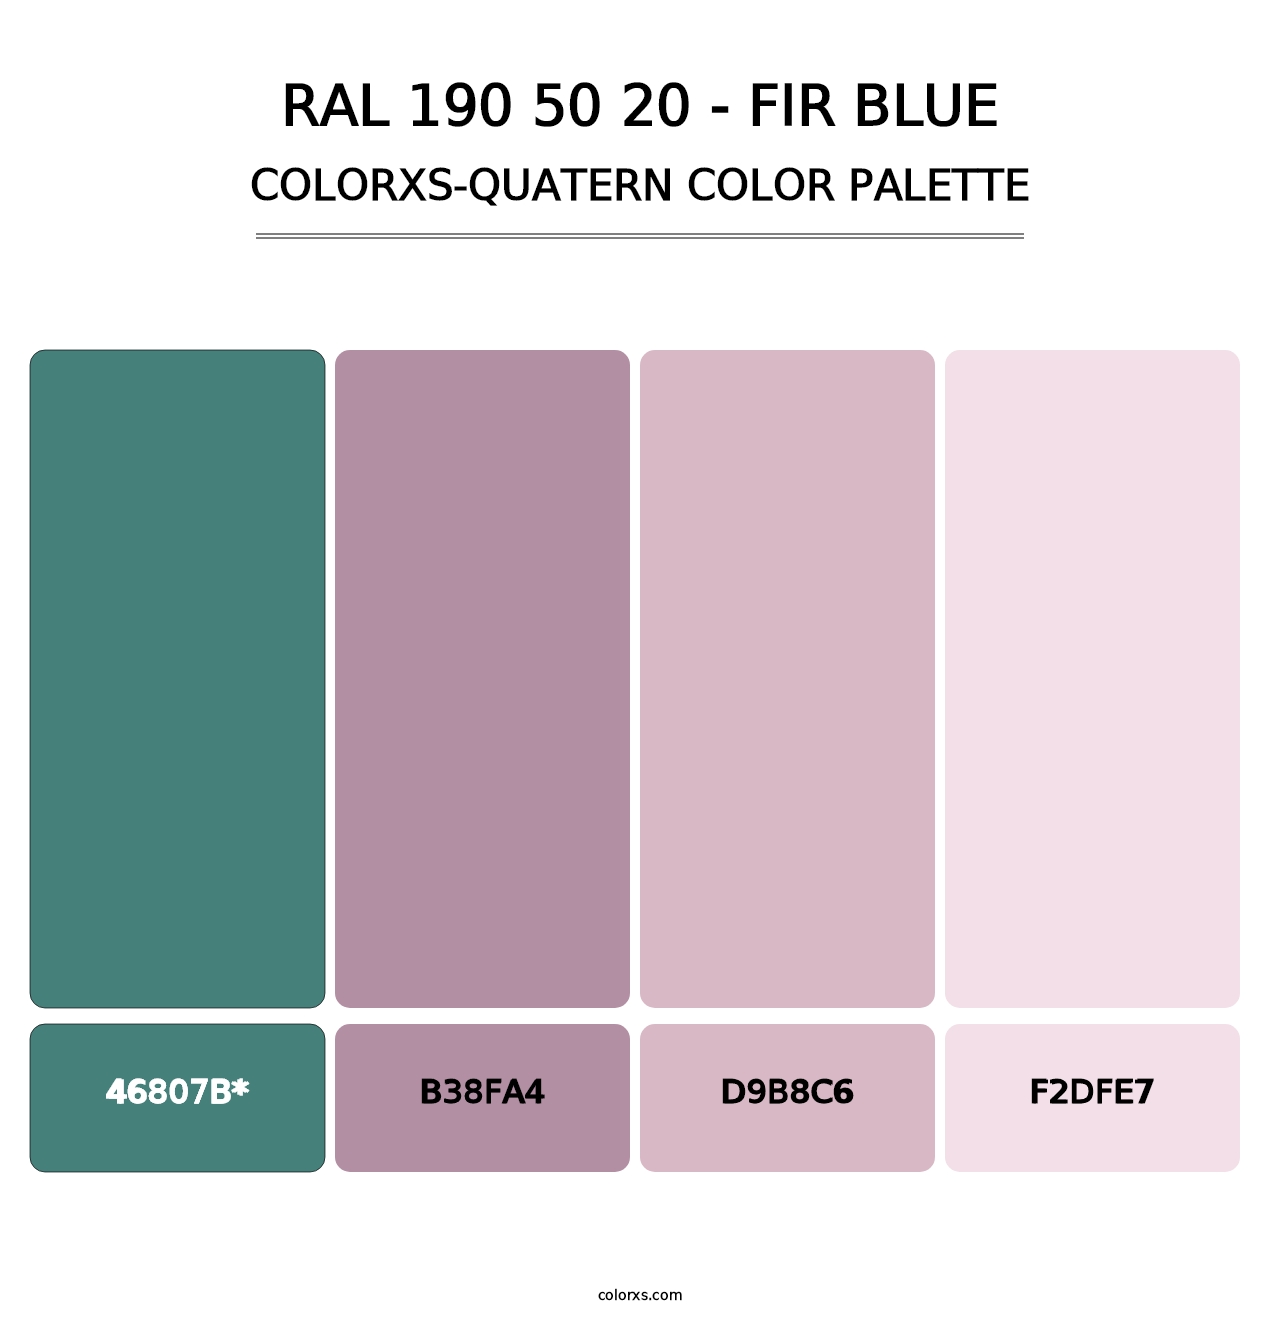 RAL 190 50 20 - Fir Blue - Colorxs Quatern Palette